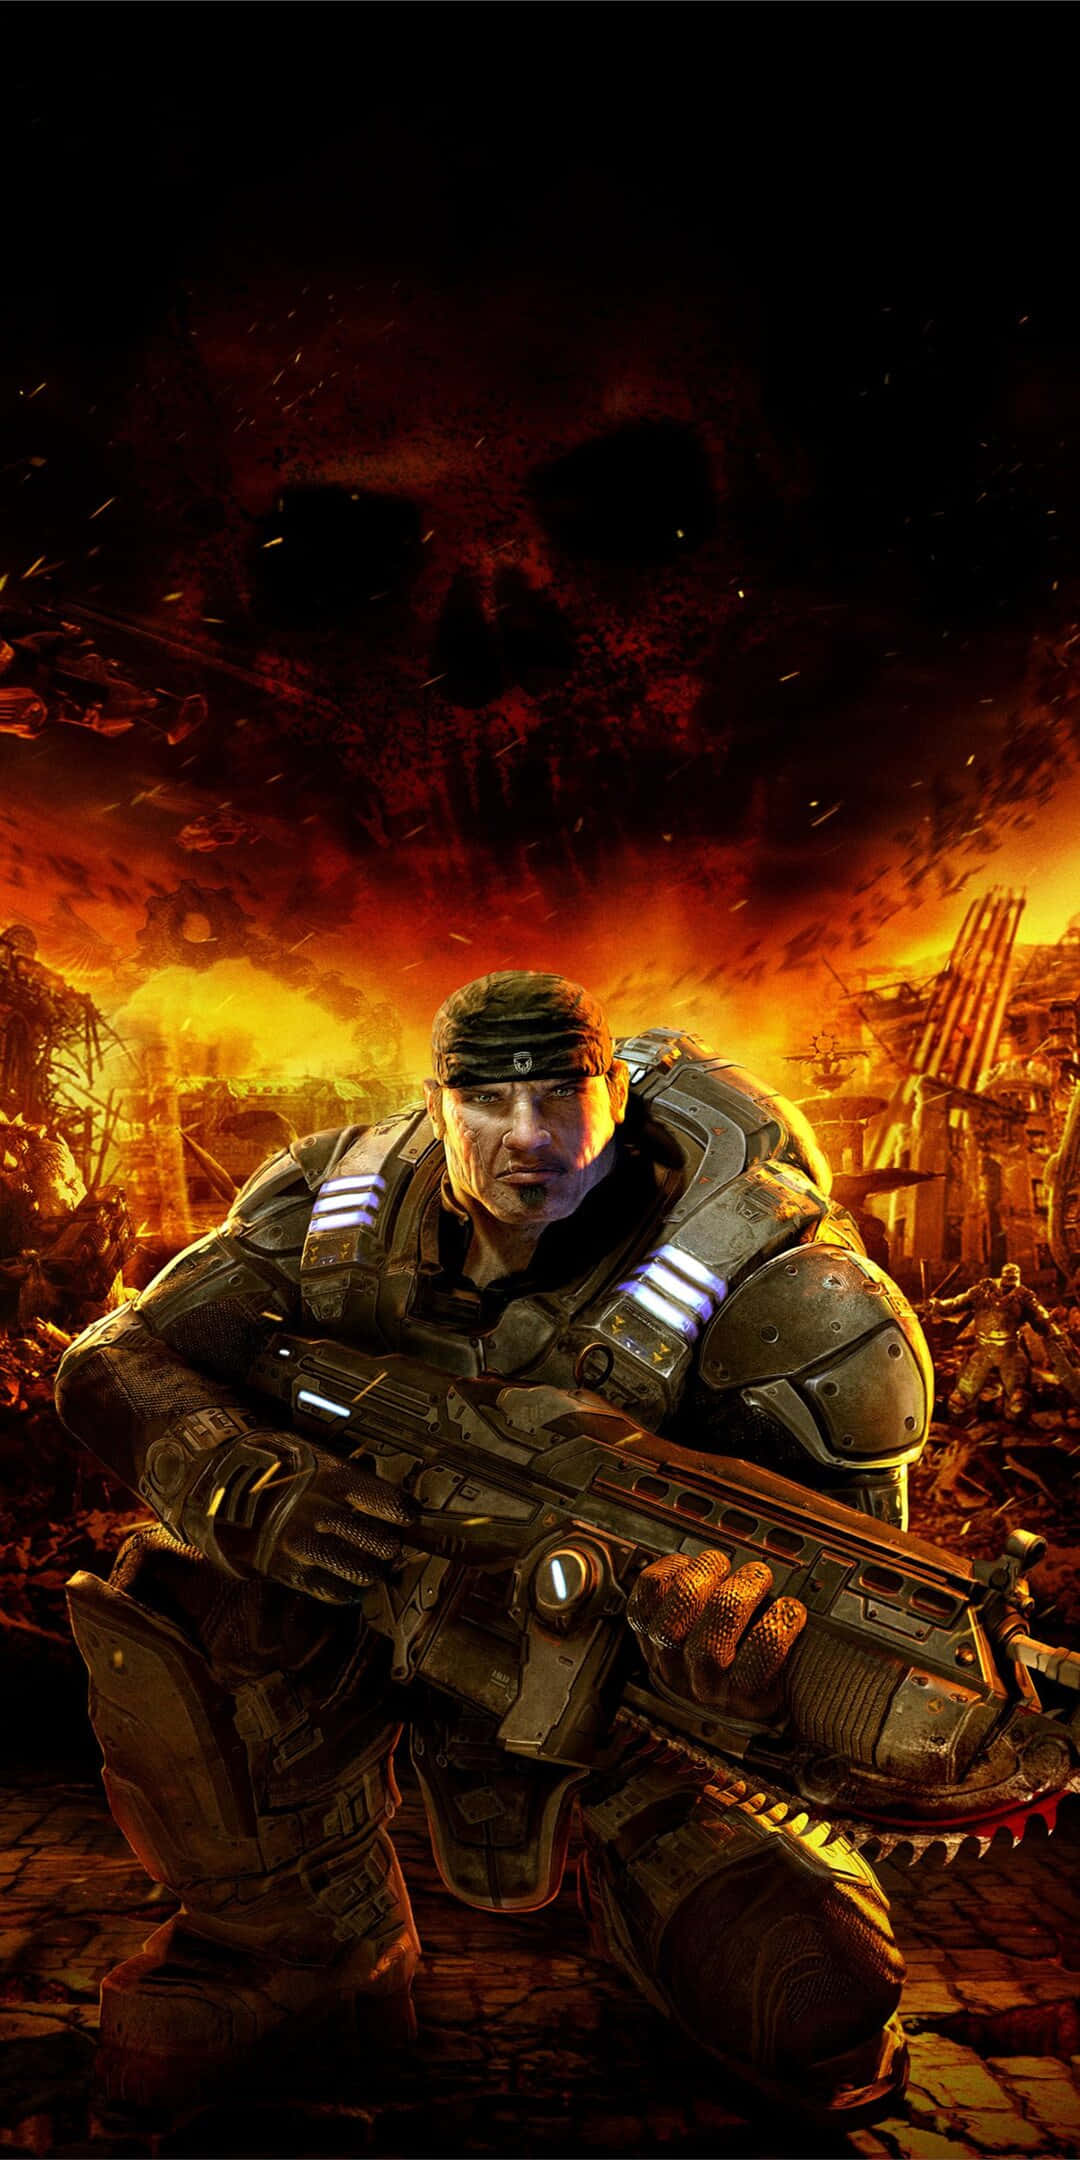 Fondode Pantalla De Retrato De Fuego Del Juego Gears Of War 5 En Pixel 3.